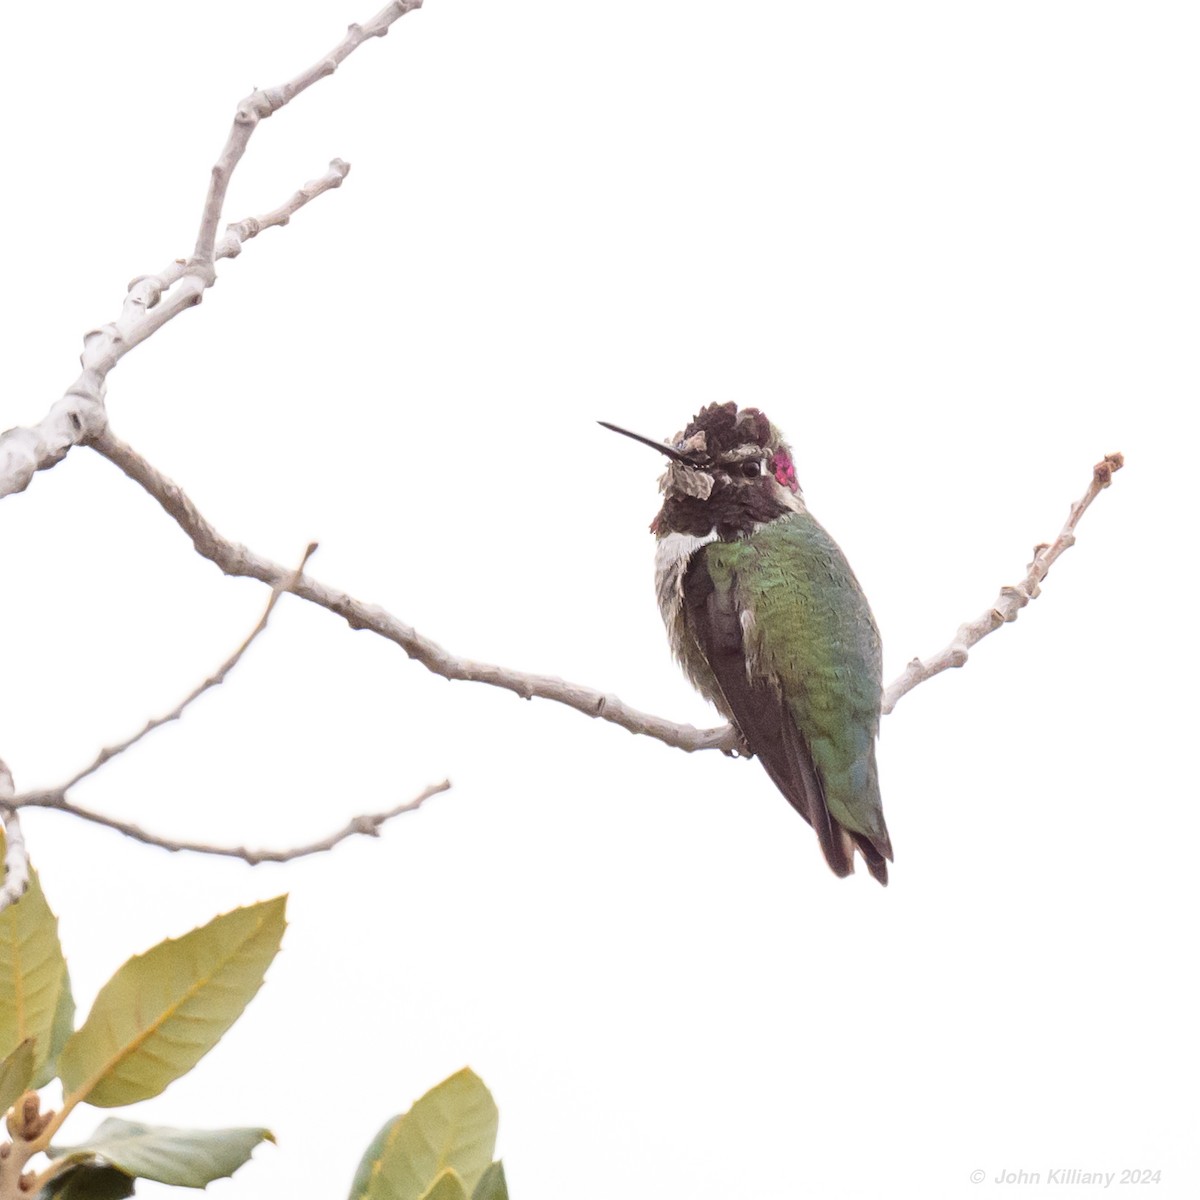 Anna's Hummingbird - John Killiany